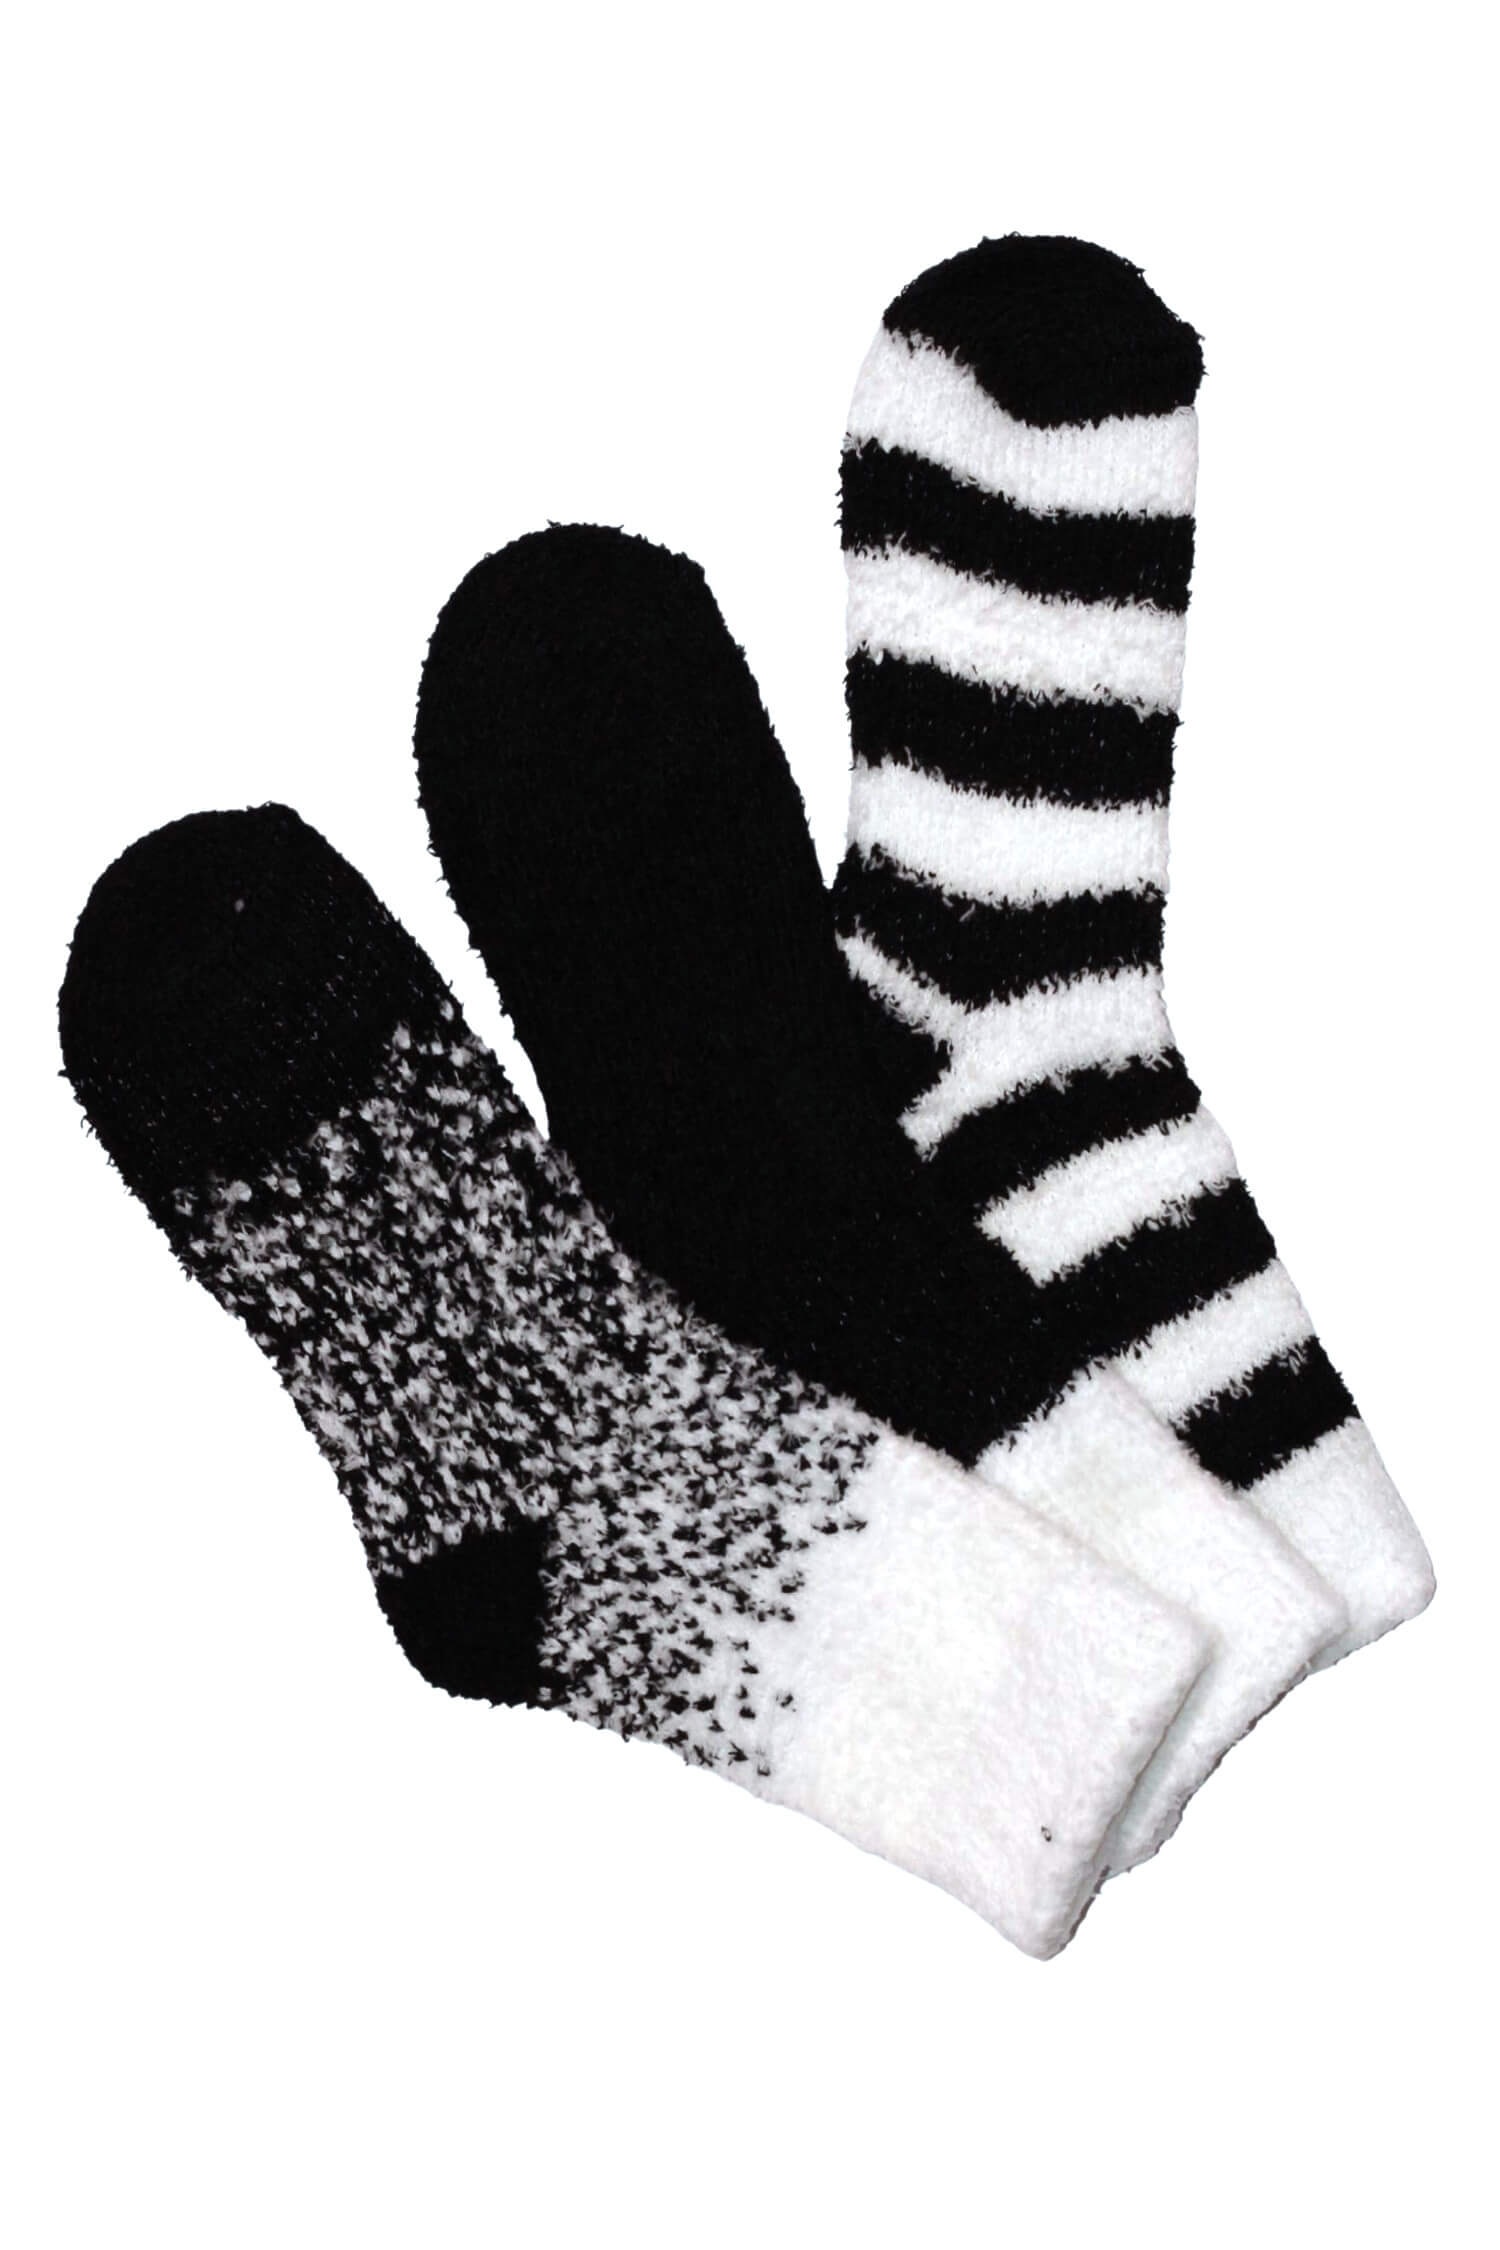 Emi Black dámské žinylkové ponožky H5101B 35-38 černá